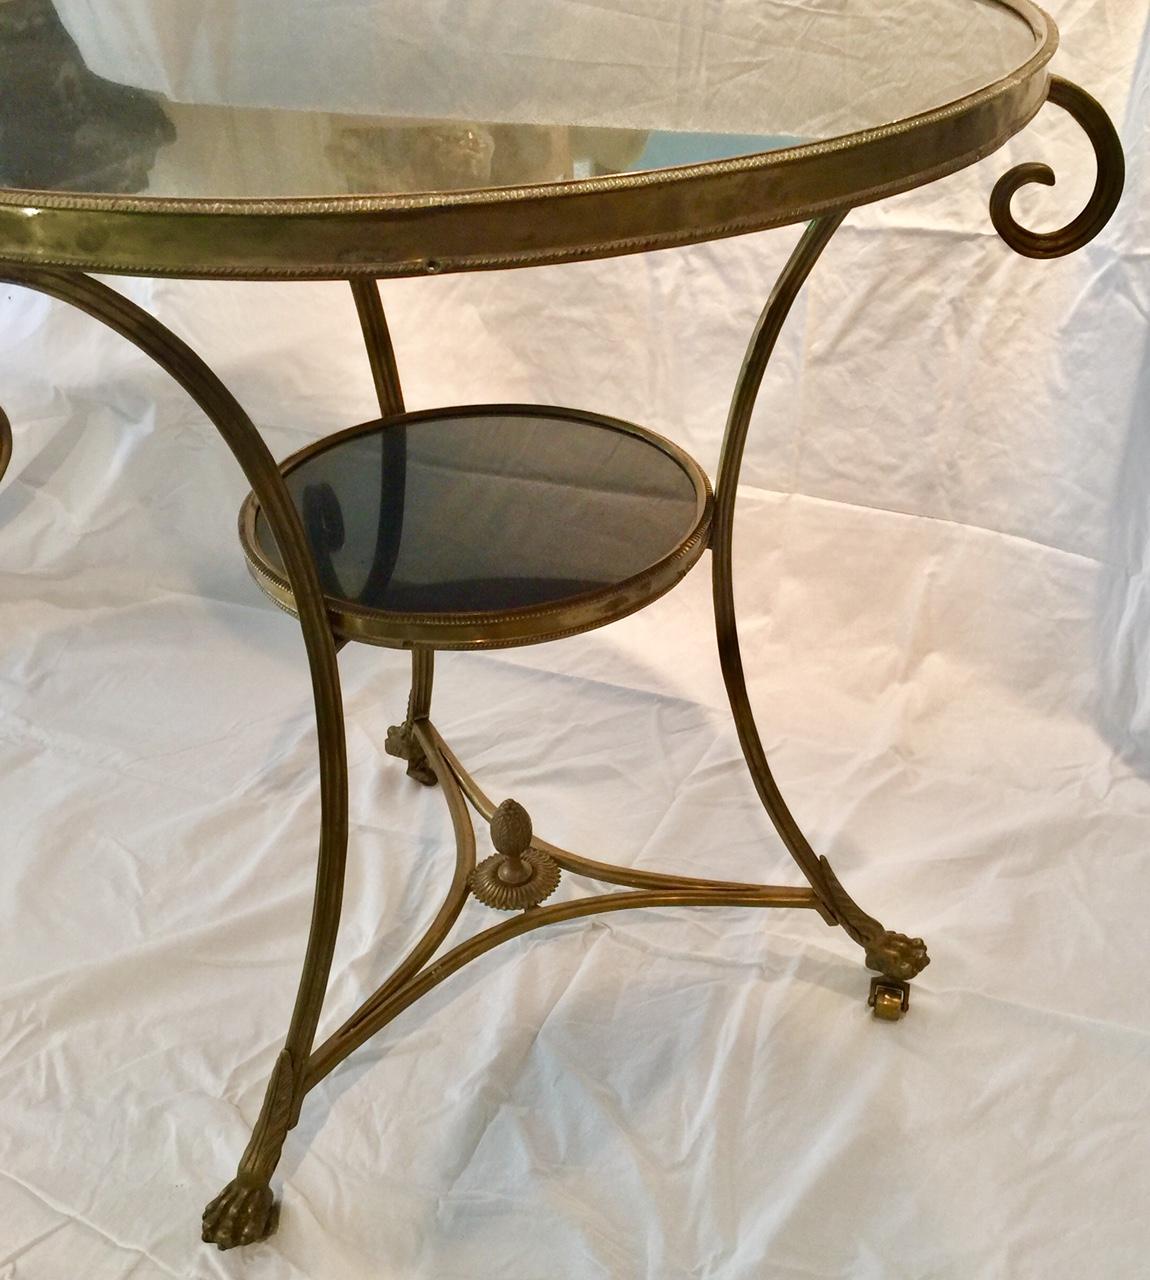 Ein klassischer runder Gueridon-Tisch aus französischer Bronze und schwarzem Marmor auf geschwungenen Beinen mit Tatzenfüßen auf Rollen. Eine runde Platte aus schwarzem Marmor wird von einem dekorativen Bronzeband umrahmt. Die Beine sind durch einen